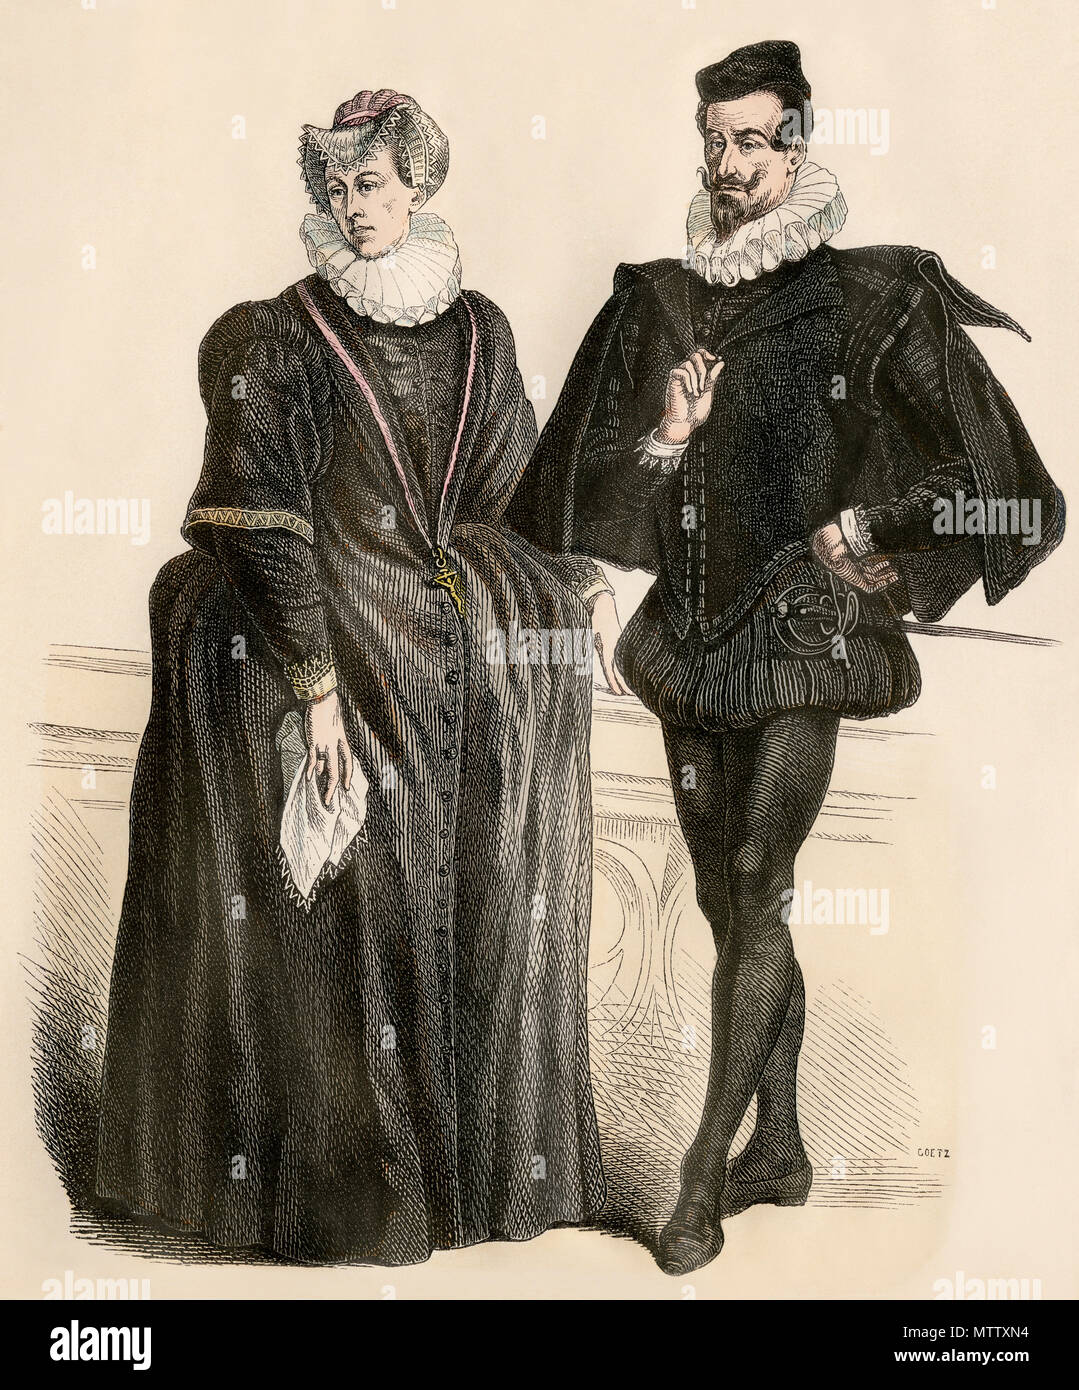 Homme et femme de noblesse allemande, milieu des années 1500. Impression couleur à la main Banque D'Images